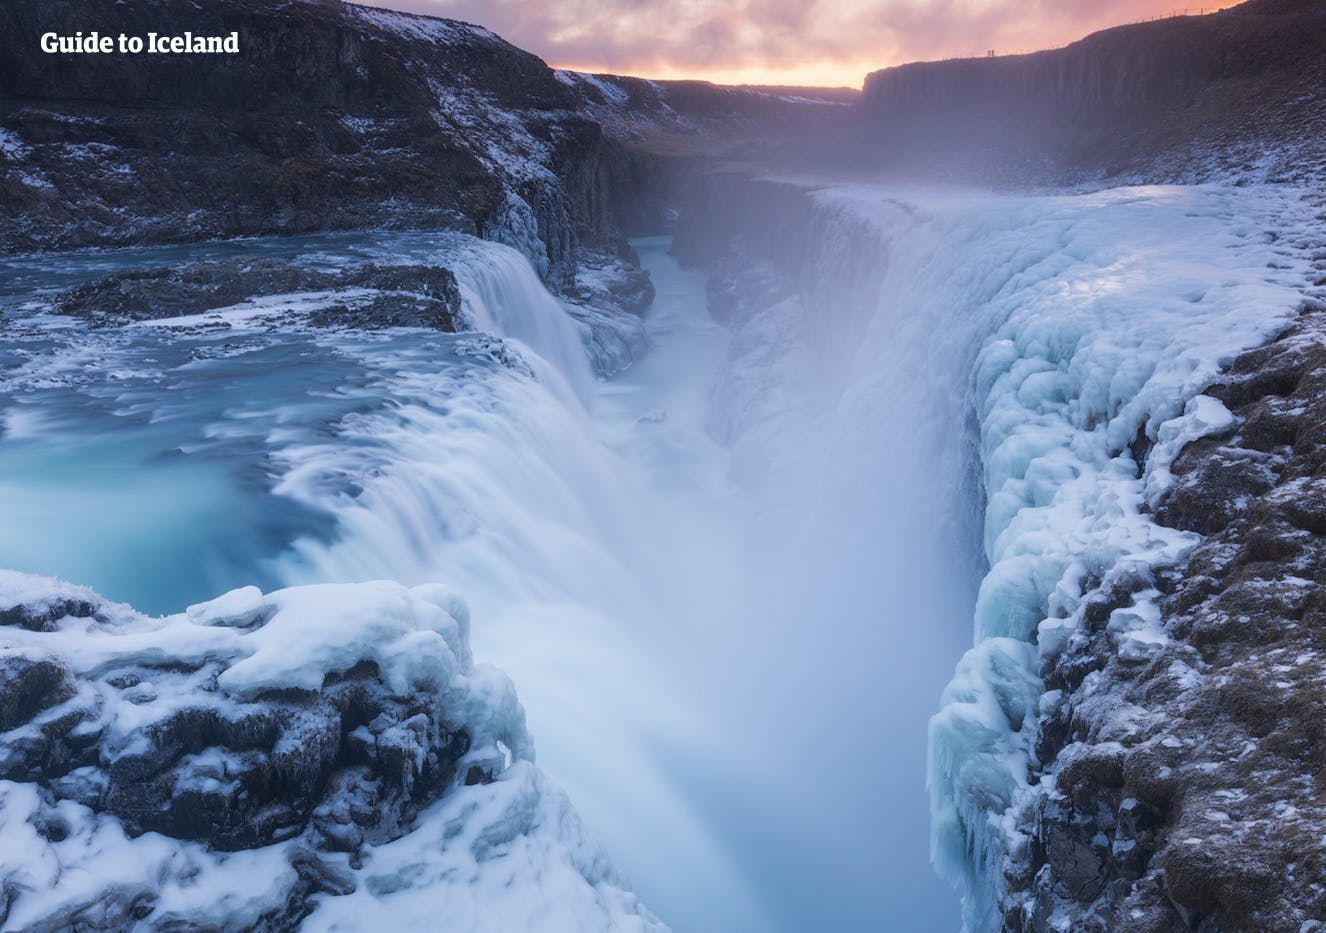 La poderosa cascada de Gullfoss es impresionante, y los paisajes helados de los alrededores en invierno solo se suman a su encanto.